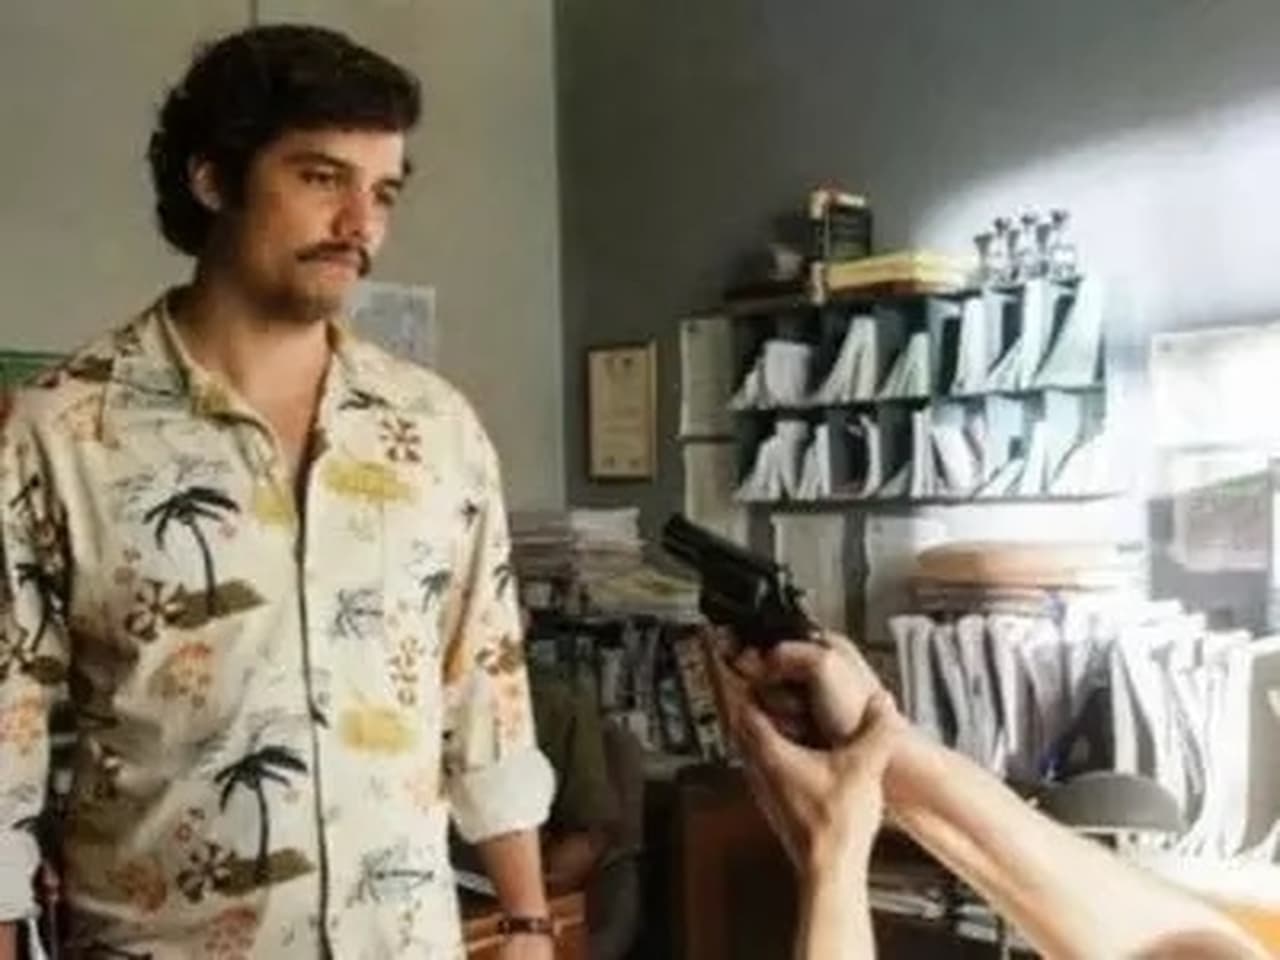 Pablo Escobar: The Drug Lord - Season 1 Episode 25 : Escobar's own men begin to betray him